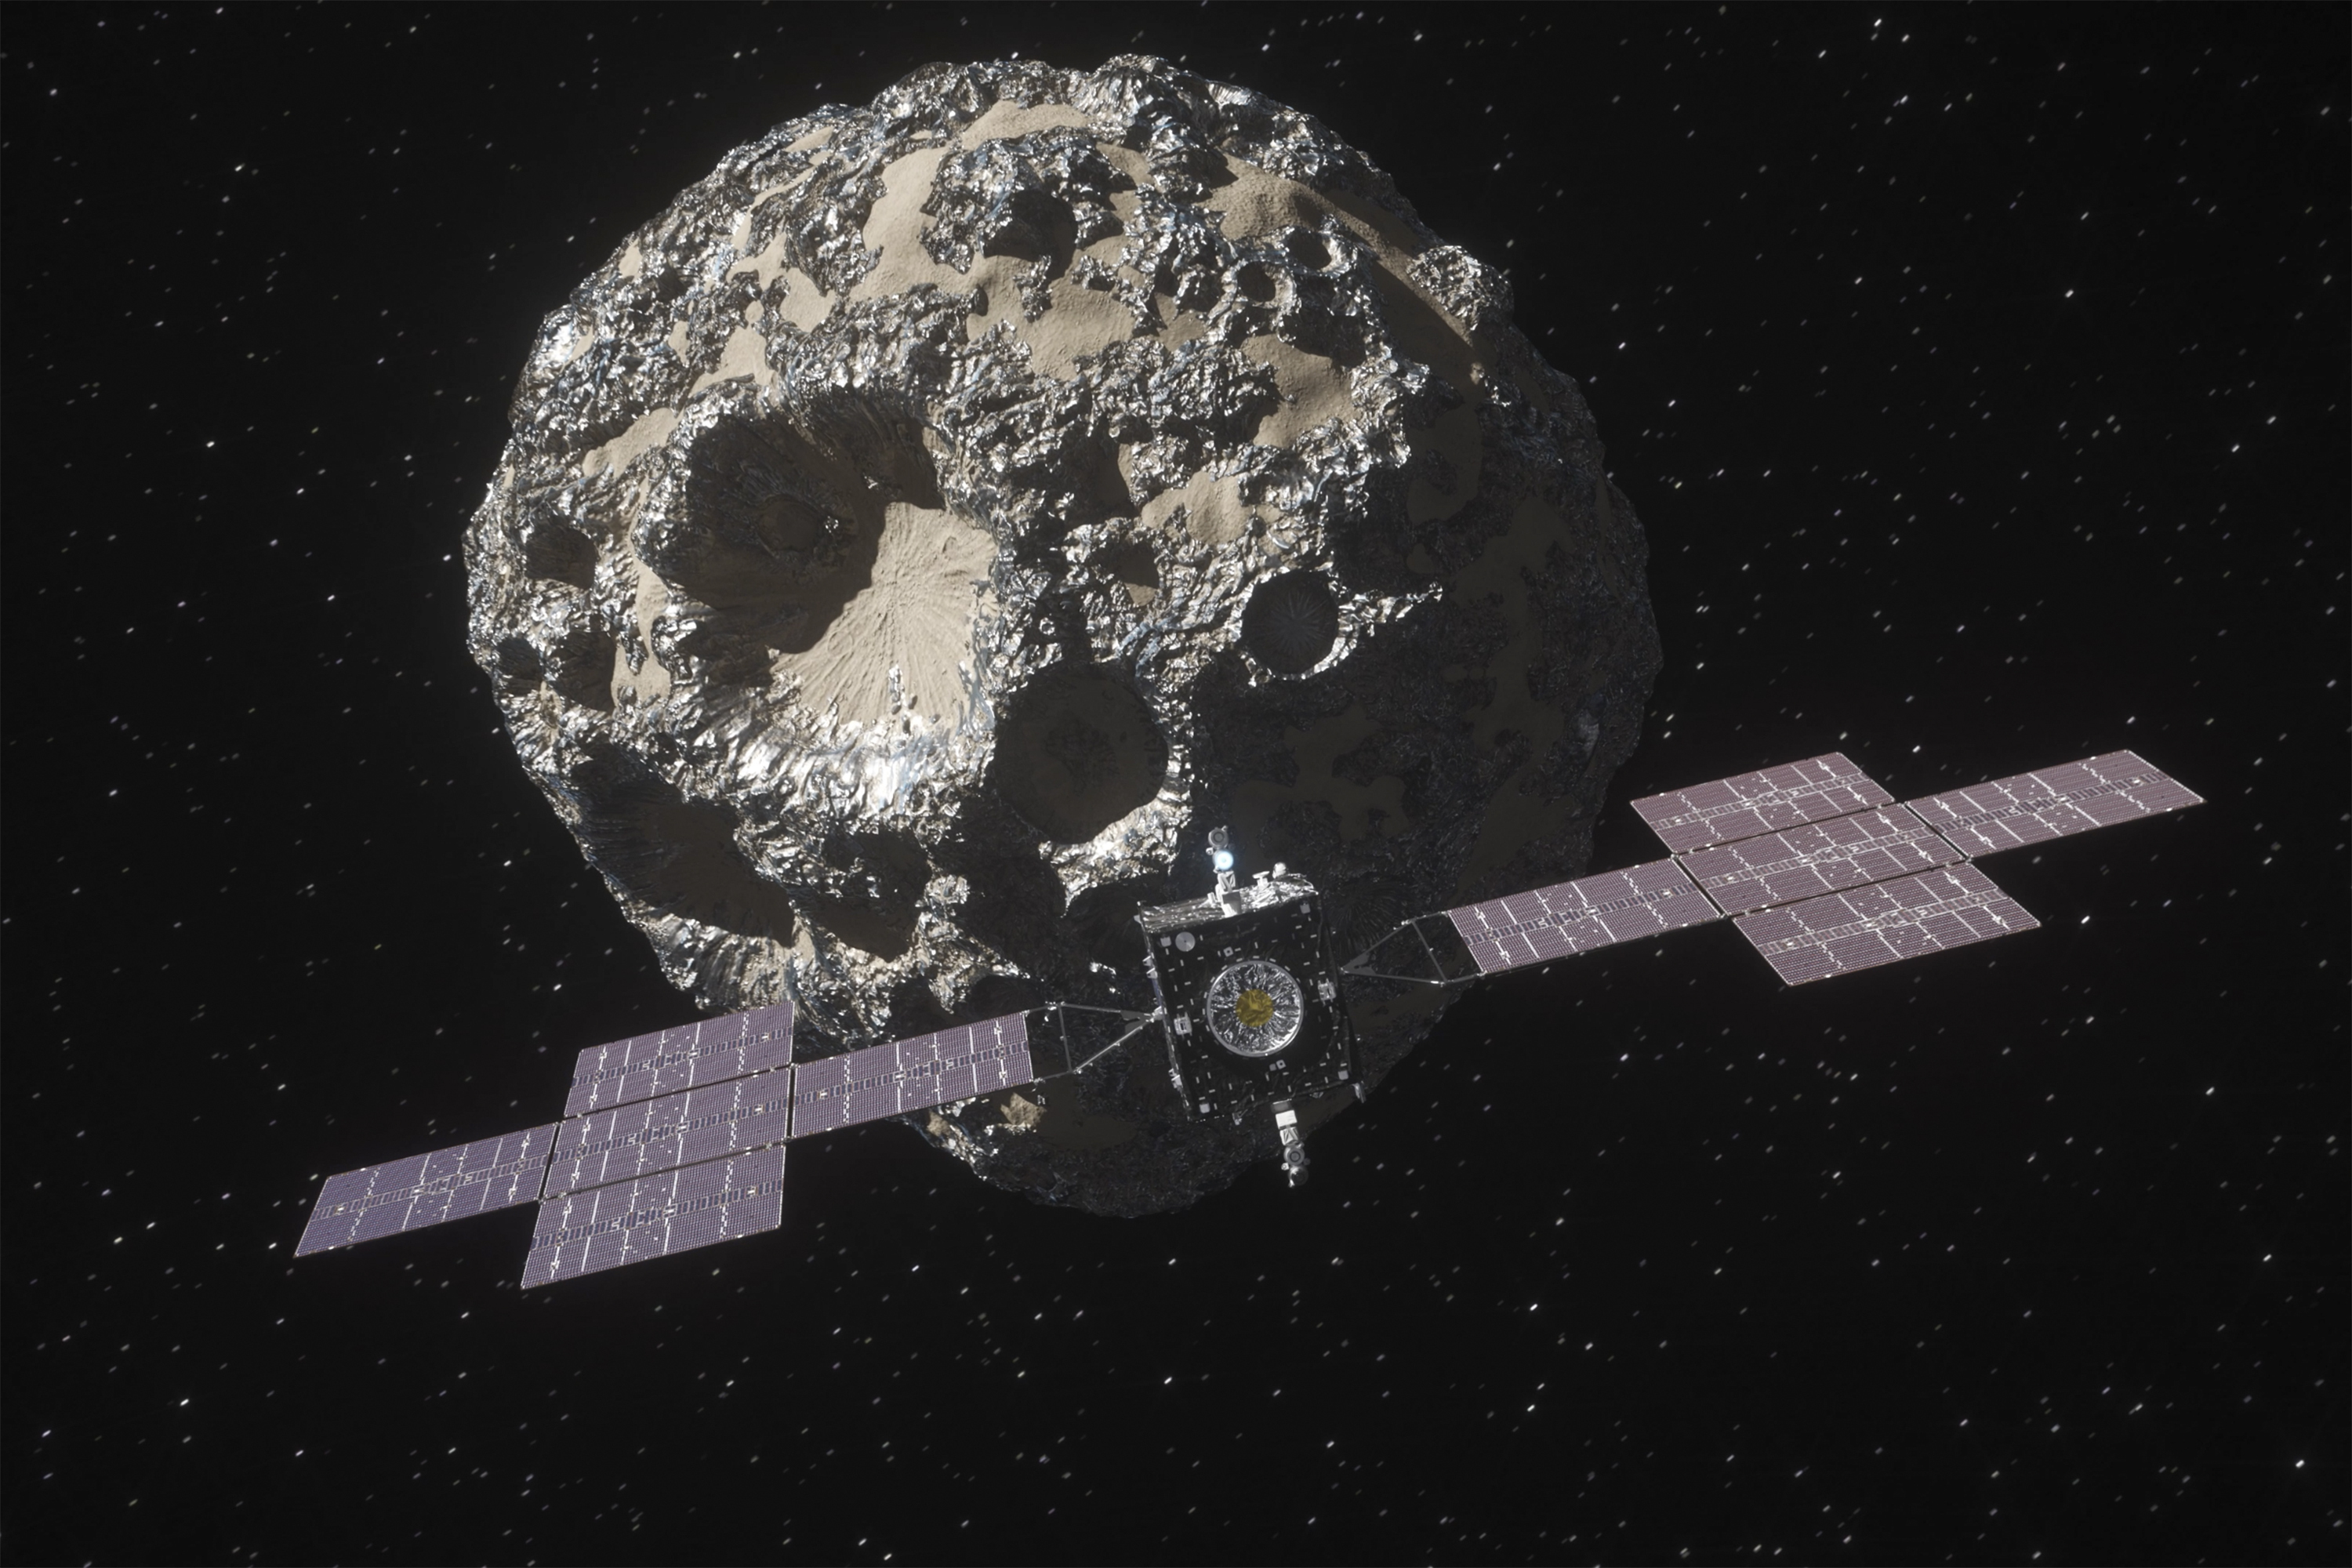 Animacin de la sonda aproximndose al asteroide.